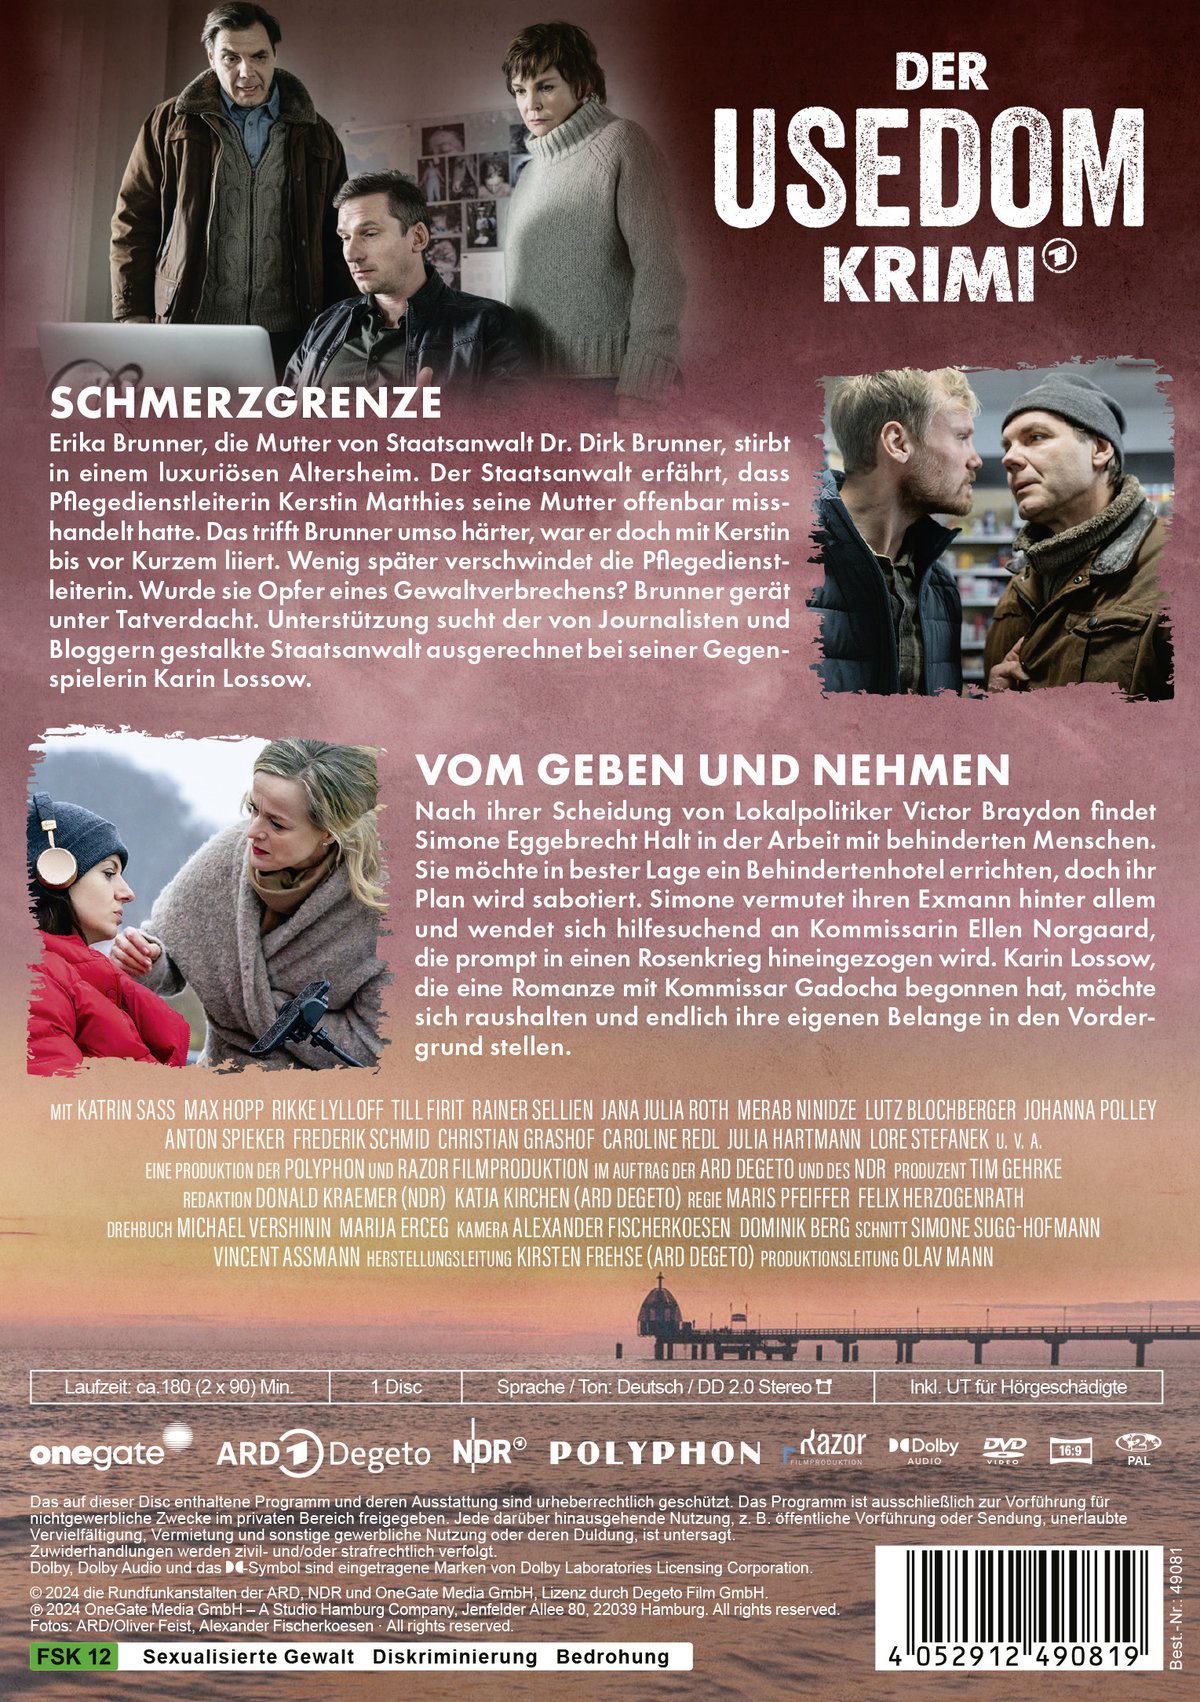 Der Usedom-Krimi: Schmerzgrenze / Vom Geben und Nehmen  (DVD)